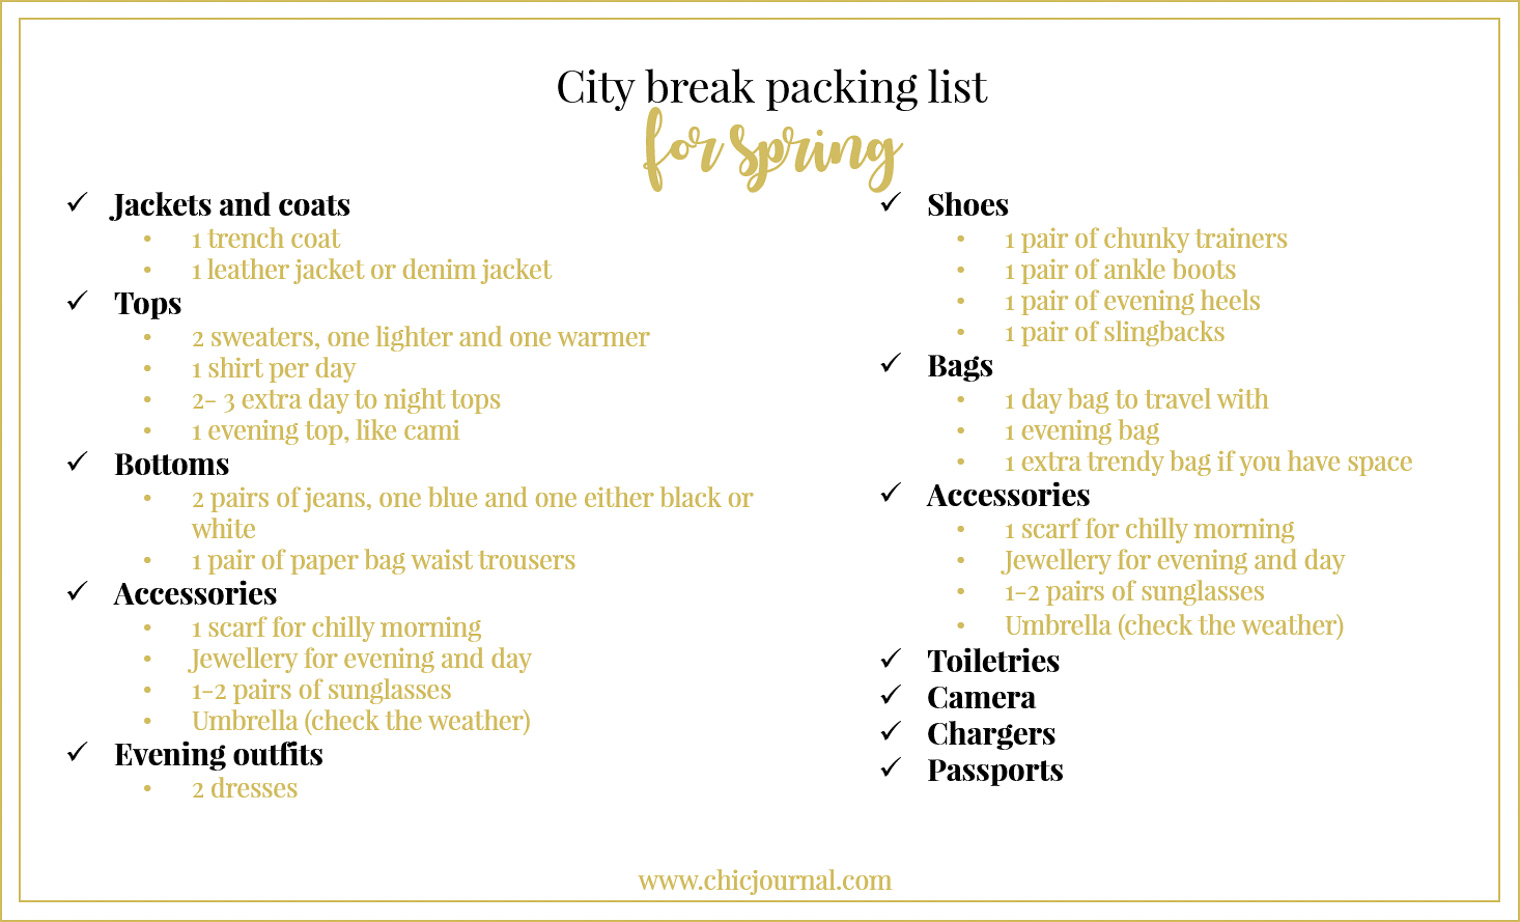 Ultimate city break packing list for spring